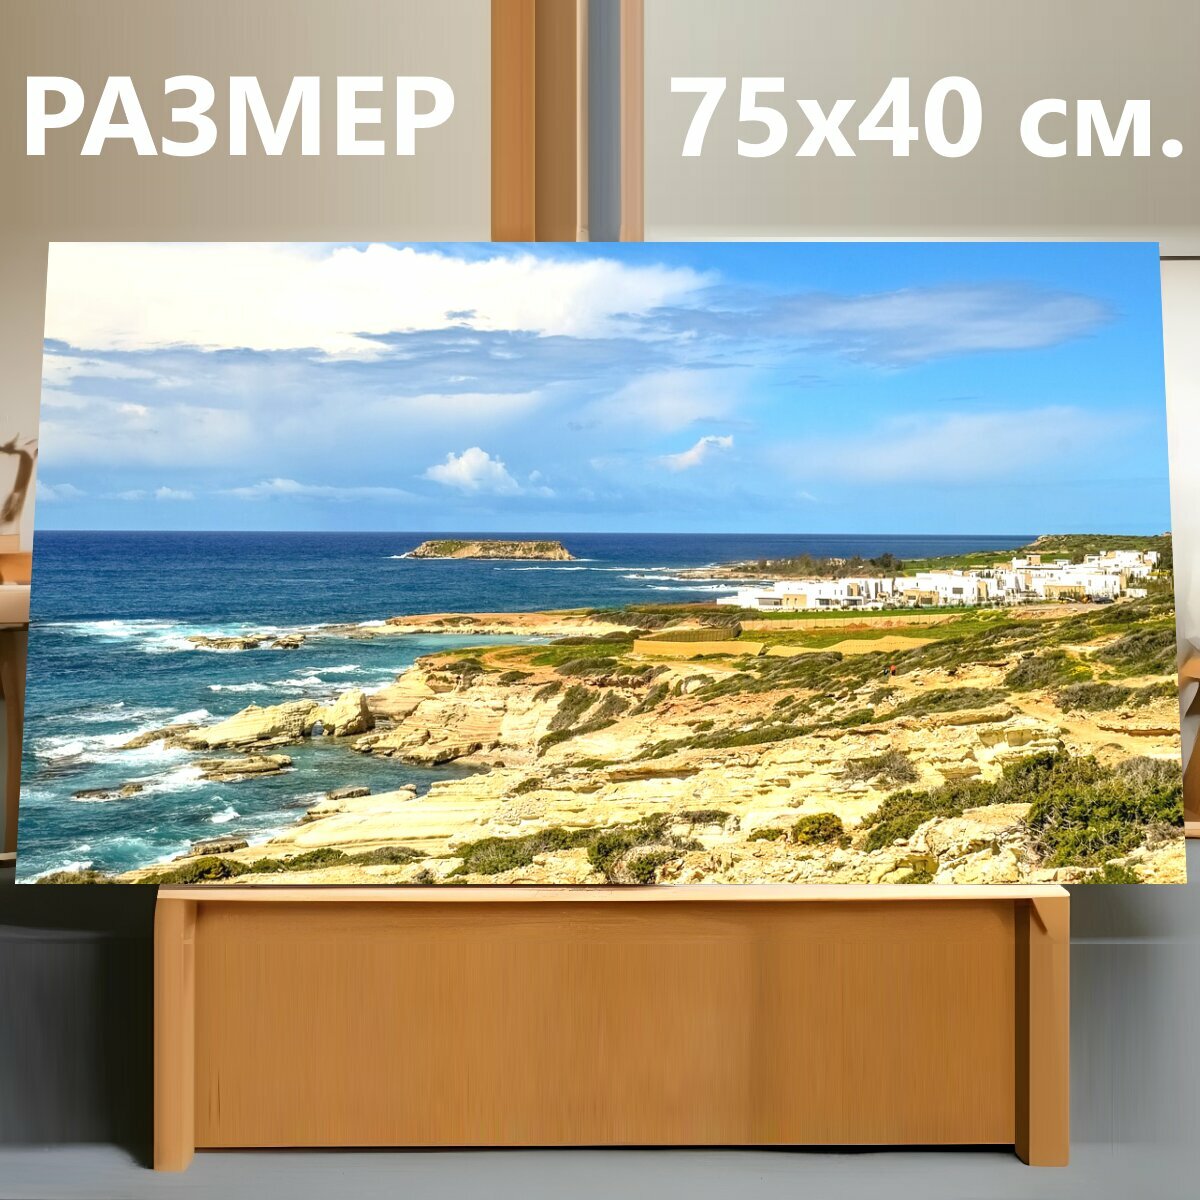 Картина на холсте "Береговая линия, горные породы, море" на подрамнике 75х40 см. для интерьера